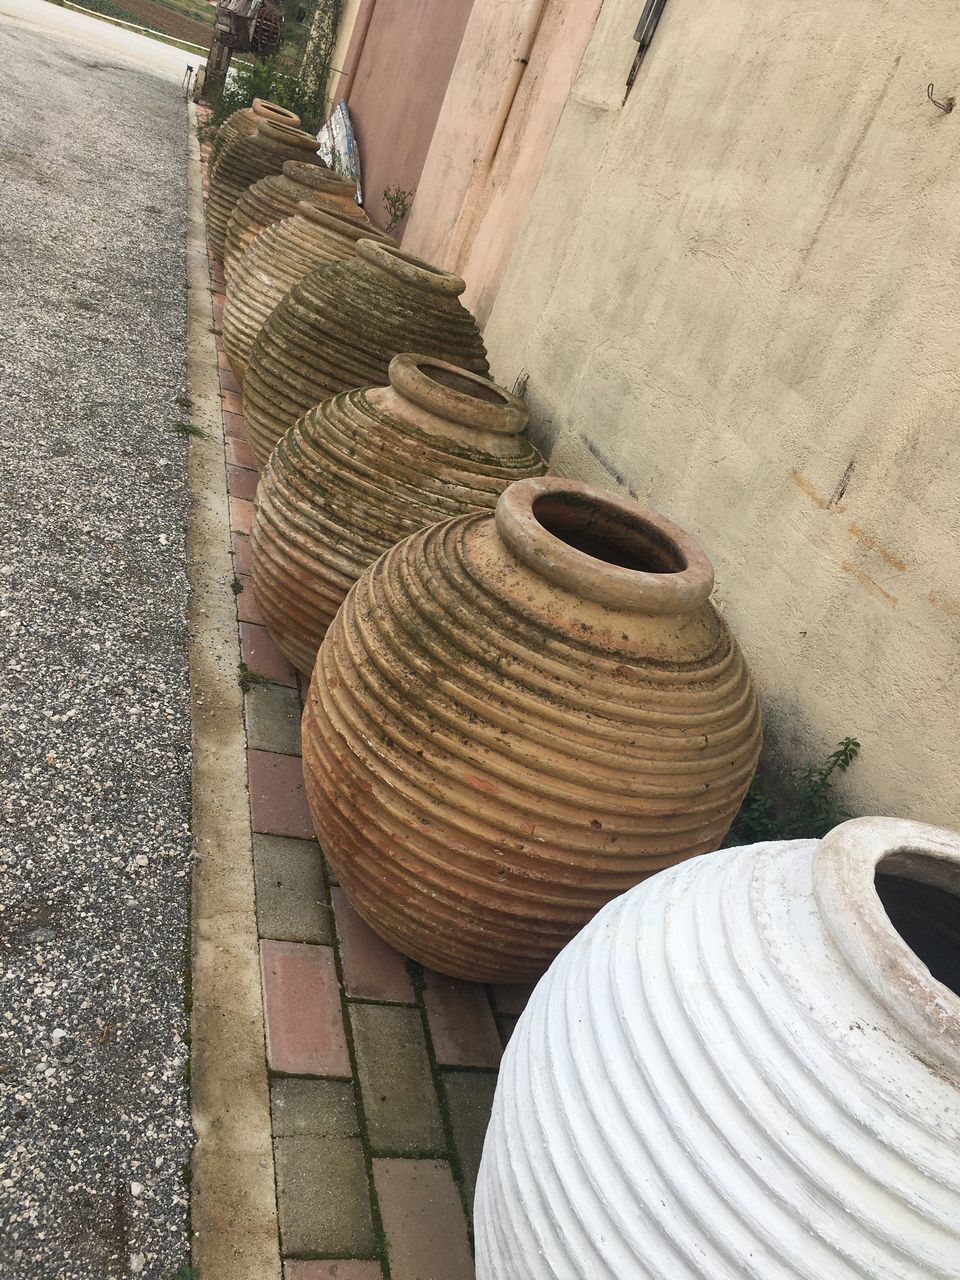 huge olive oil jars, greek old pots oil pottery ceramic wine pots